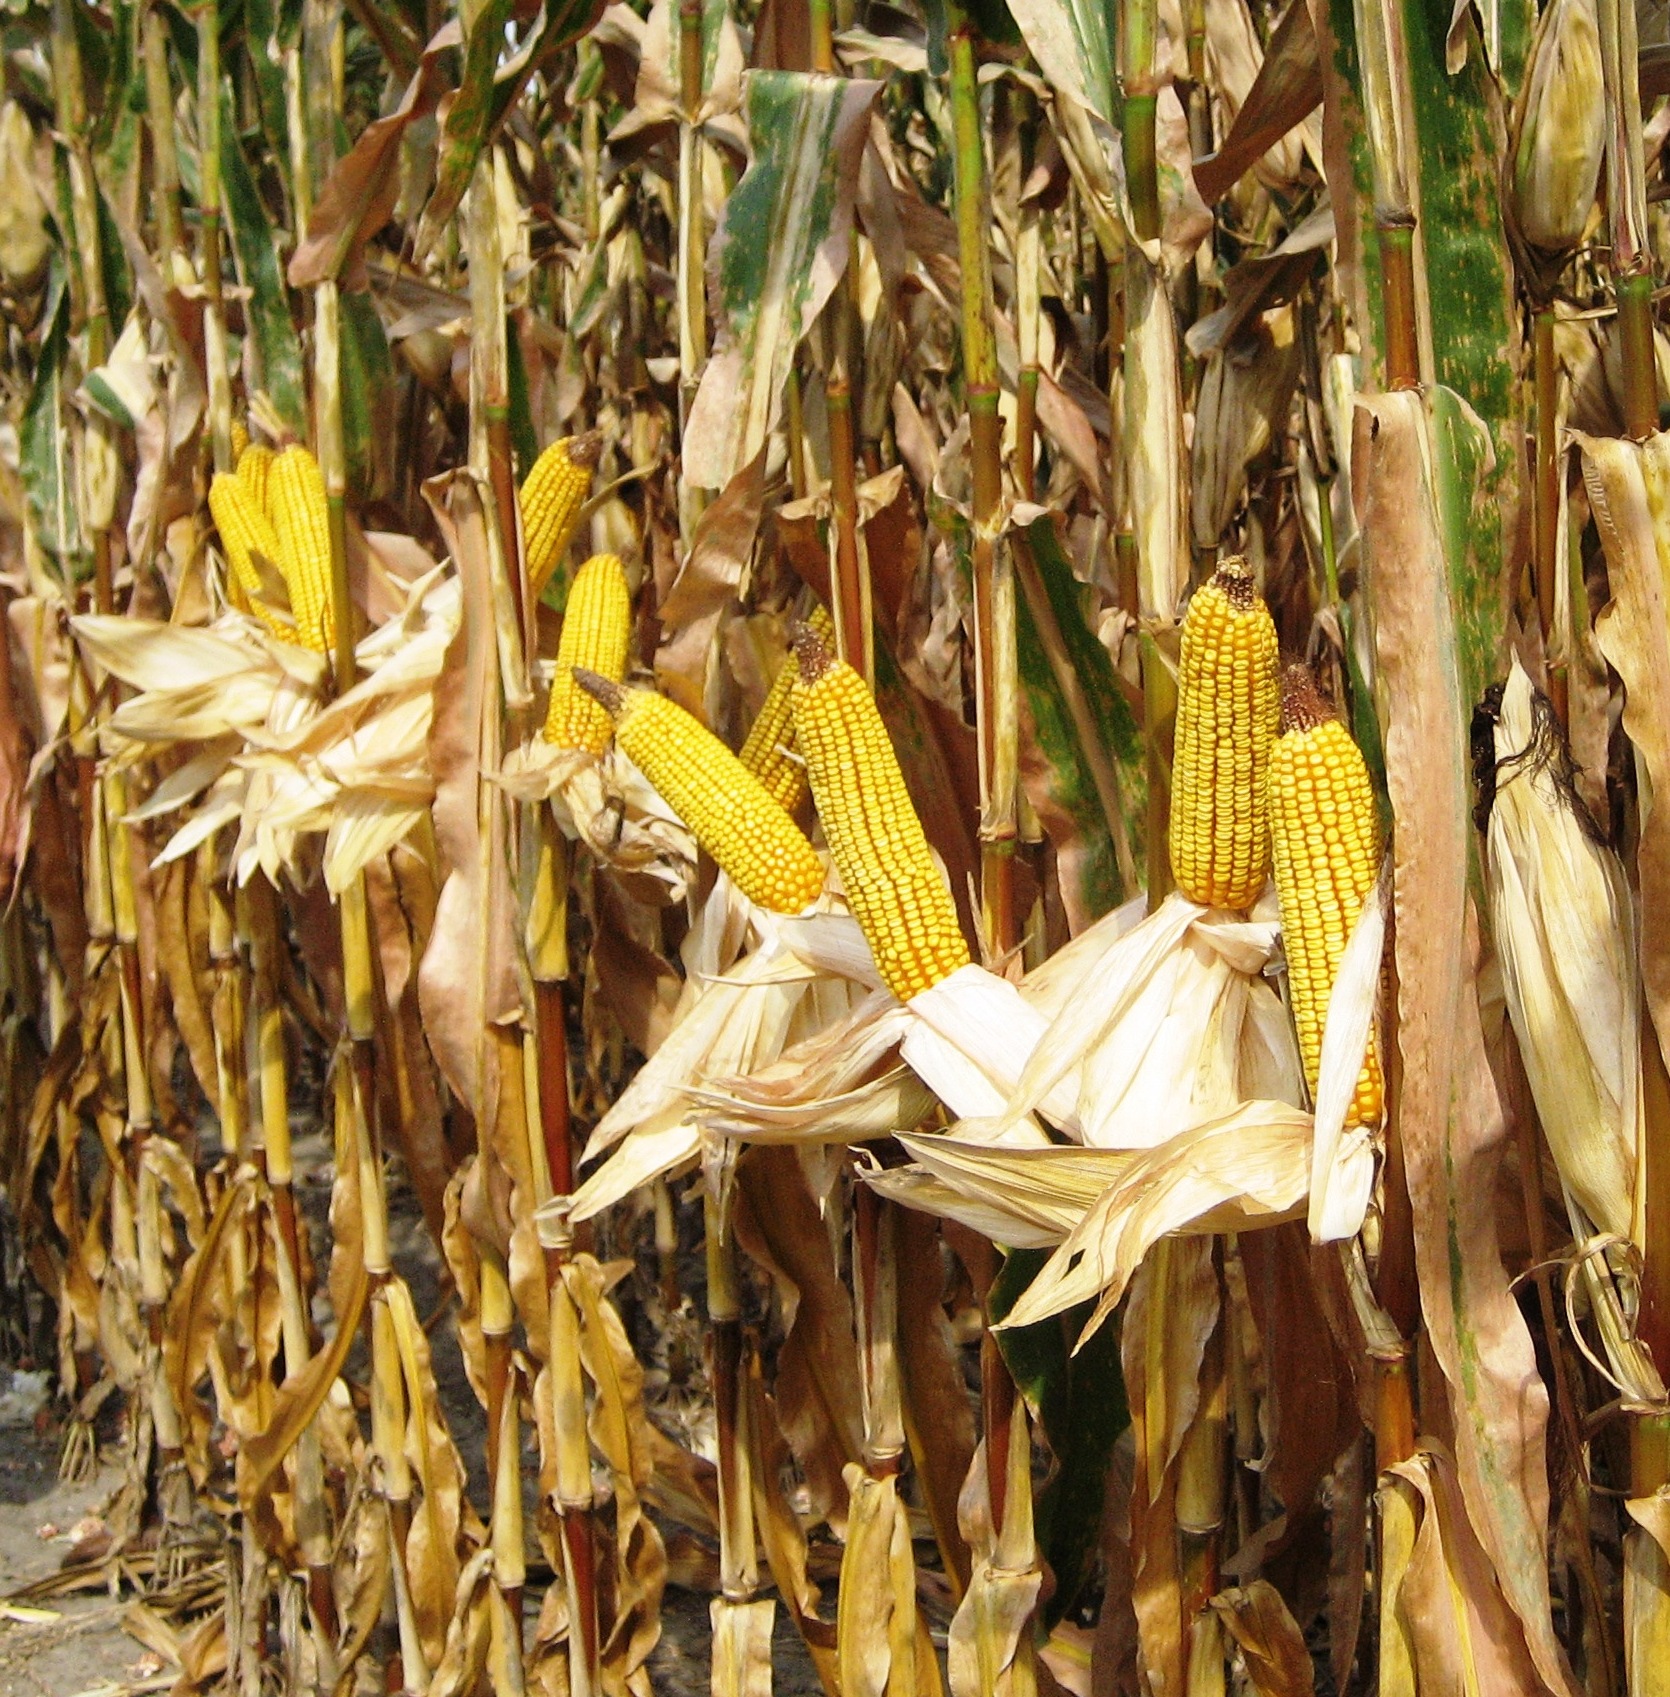 a corn field